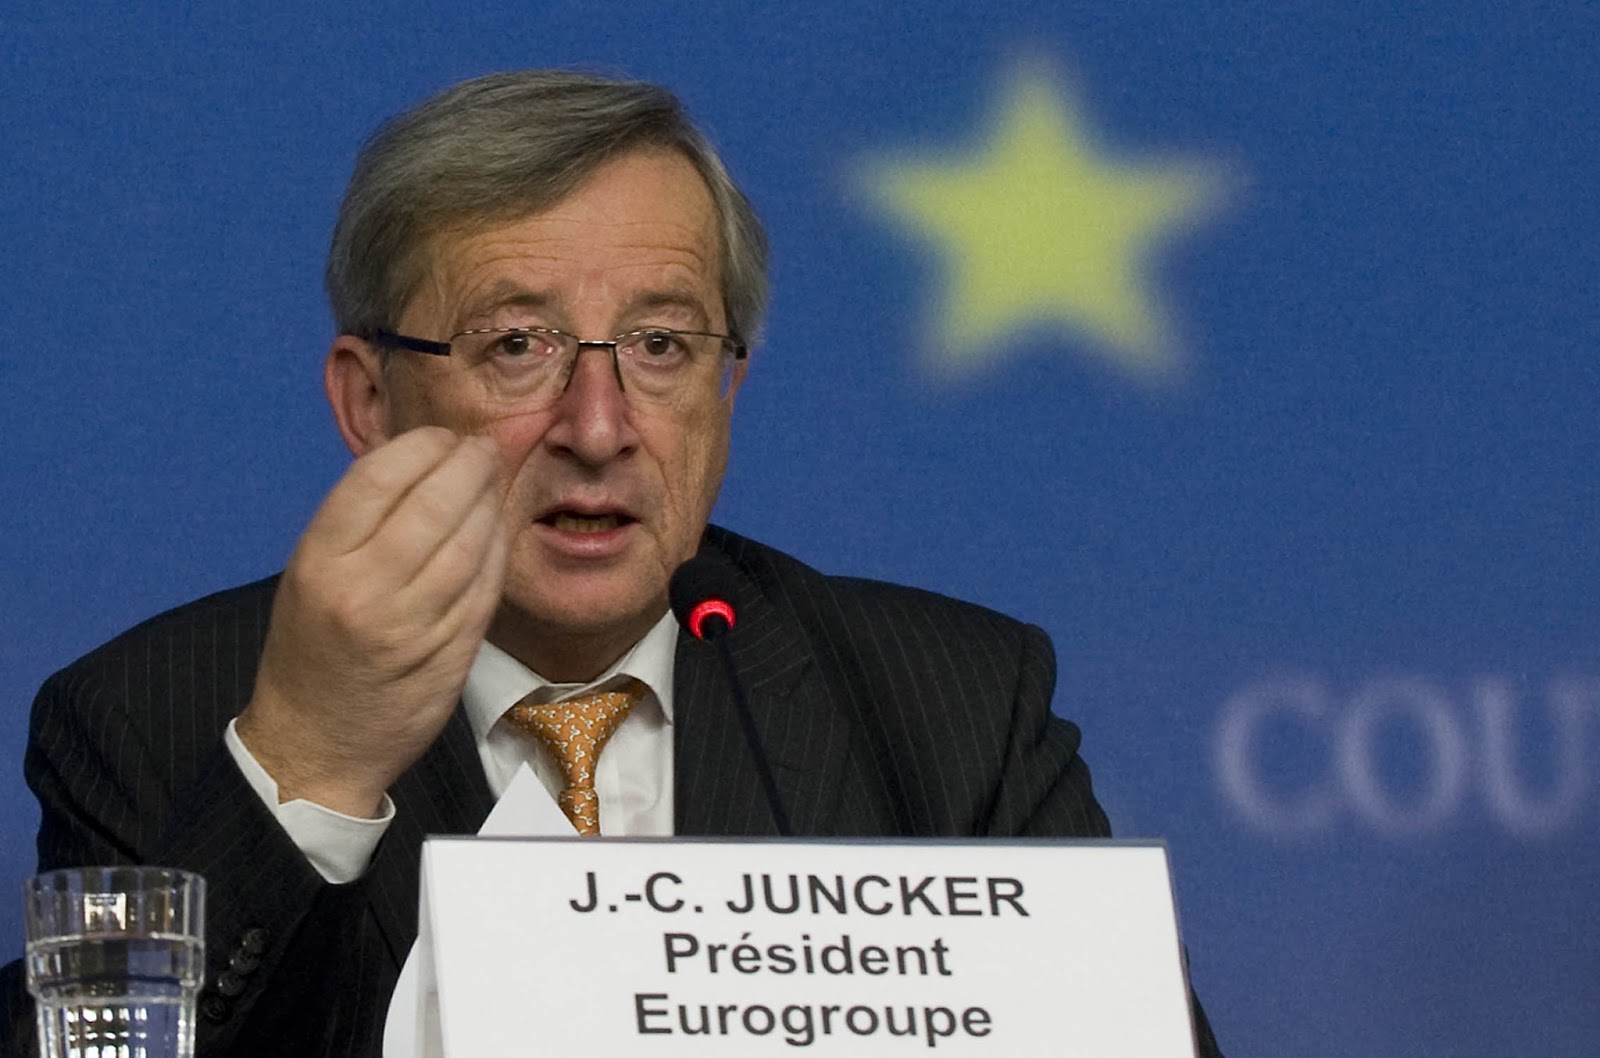 Jean-Claude Juncker's quote #4